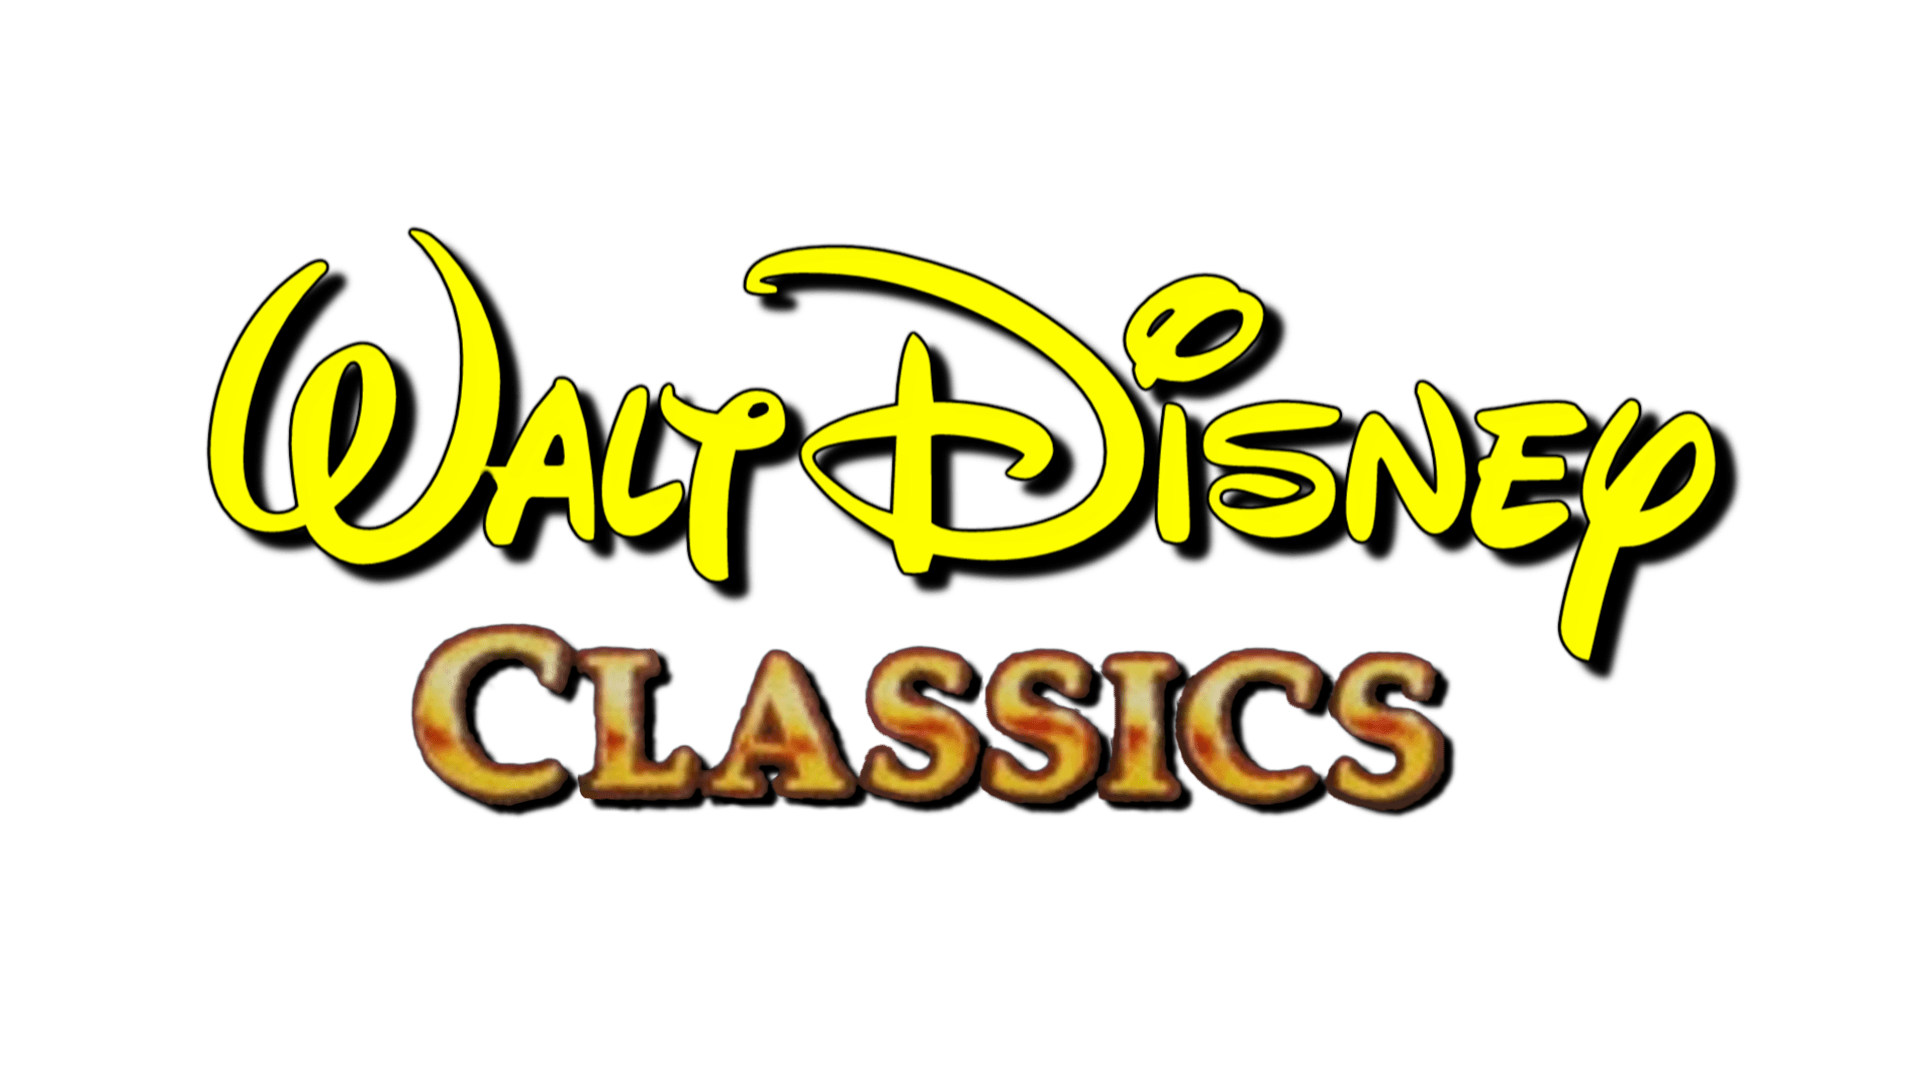 Walt Disney Classics VHS Logo - Walt disney classics Logos